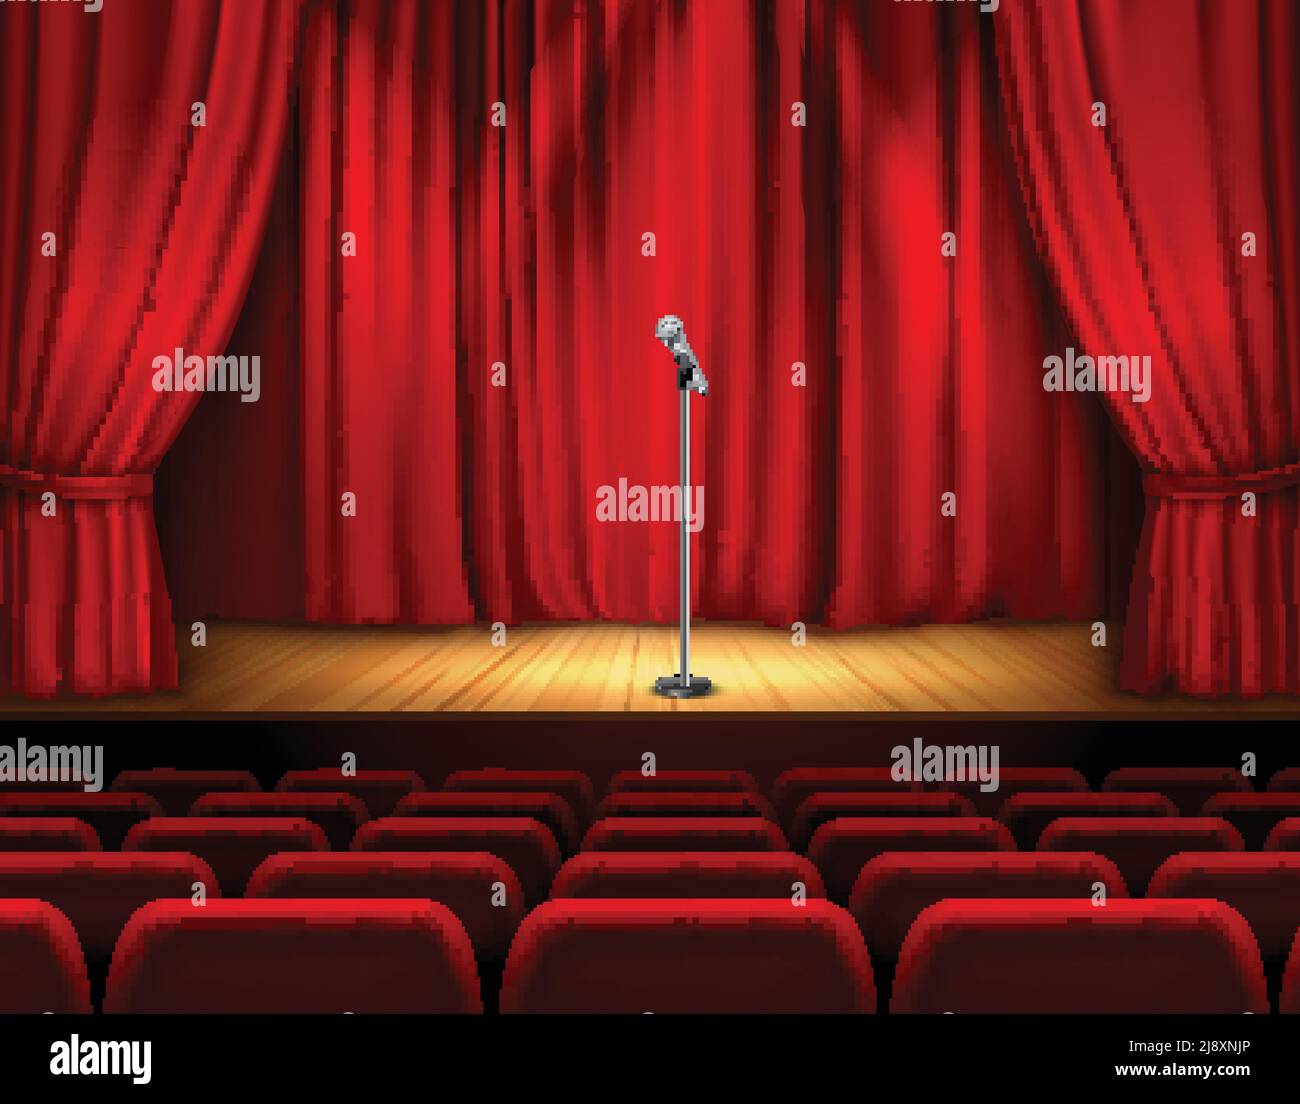 Realistische Theaterbühne mit Holzboden und rotem Vorhang Mikrofon Und Sitze für Zuschauer Vektor-Illustration Stock Vektor